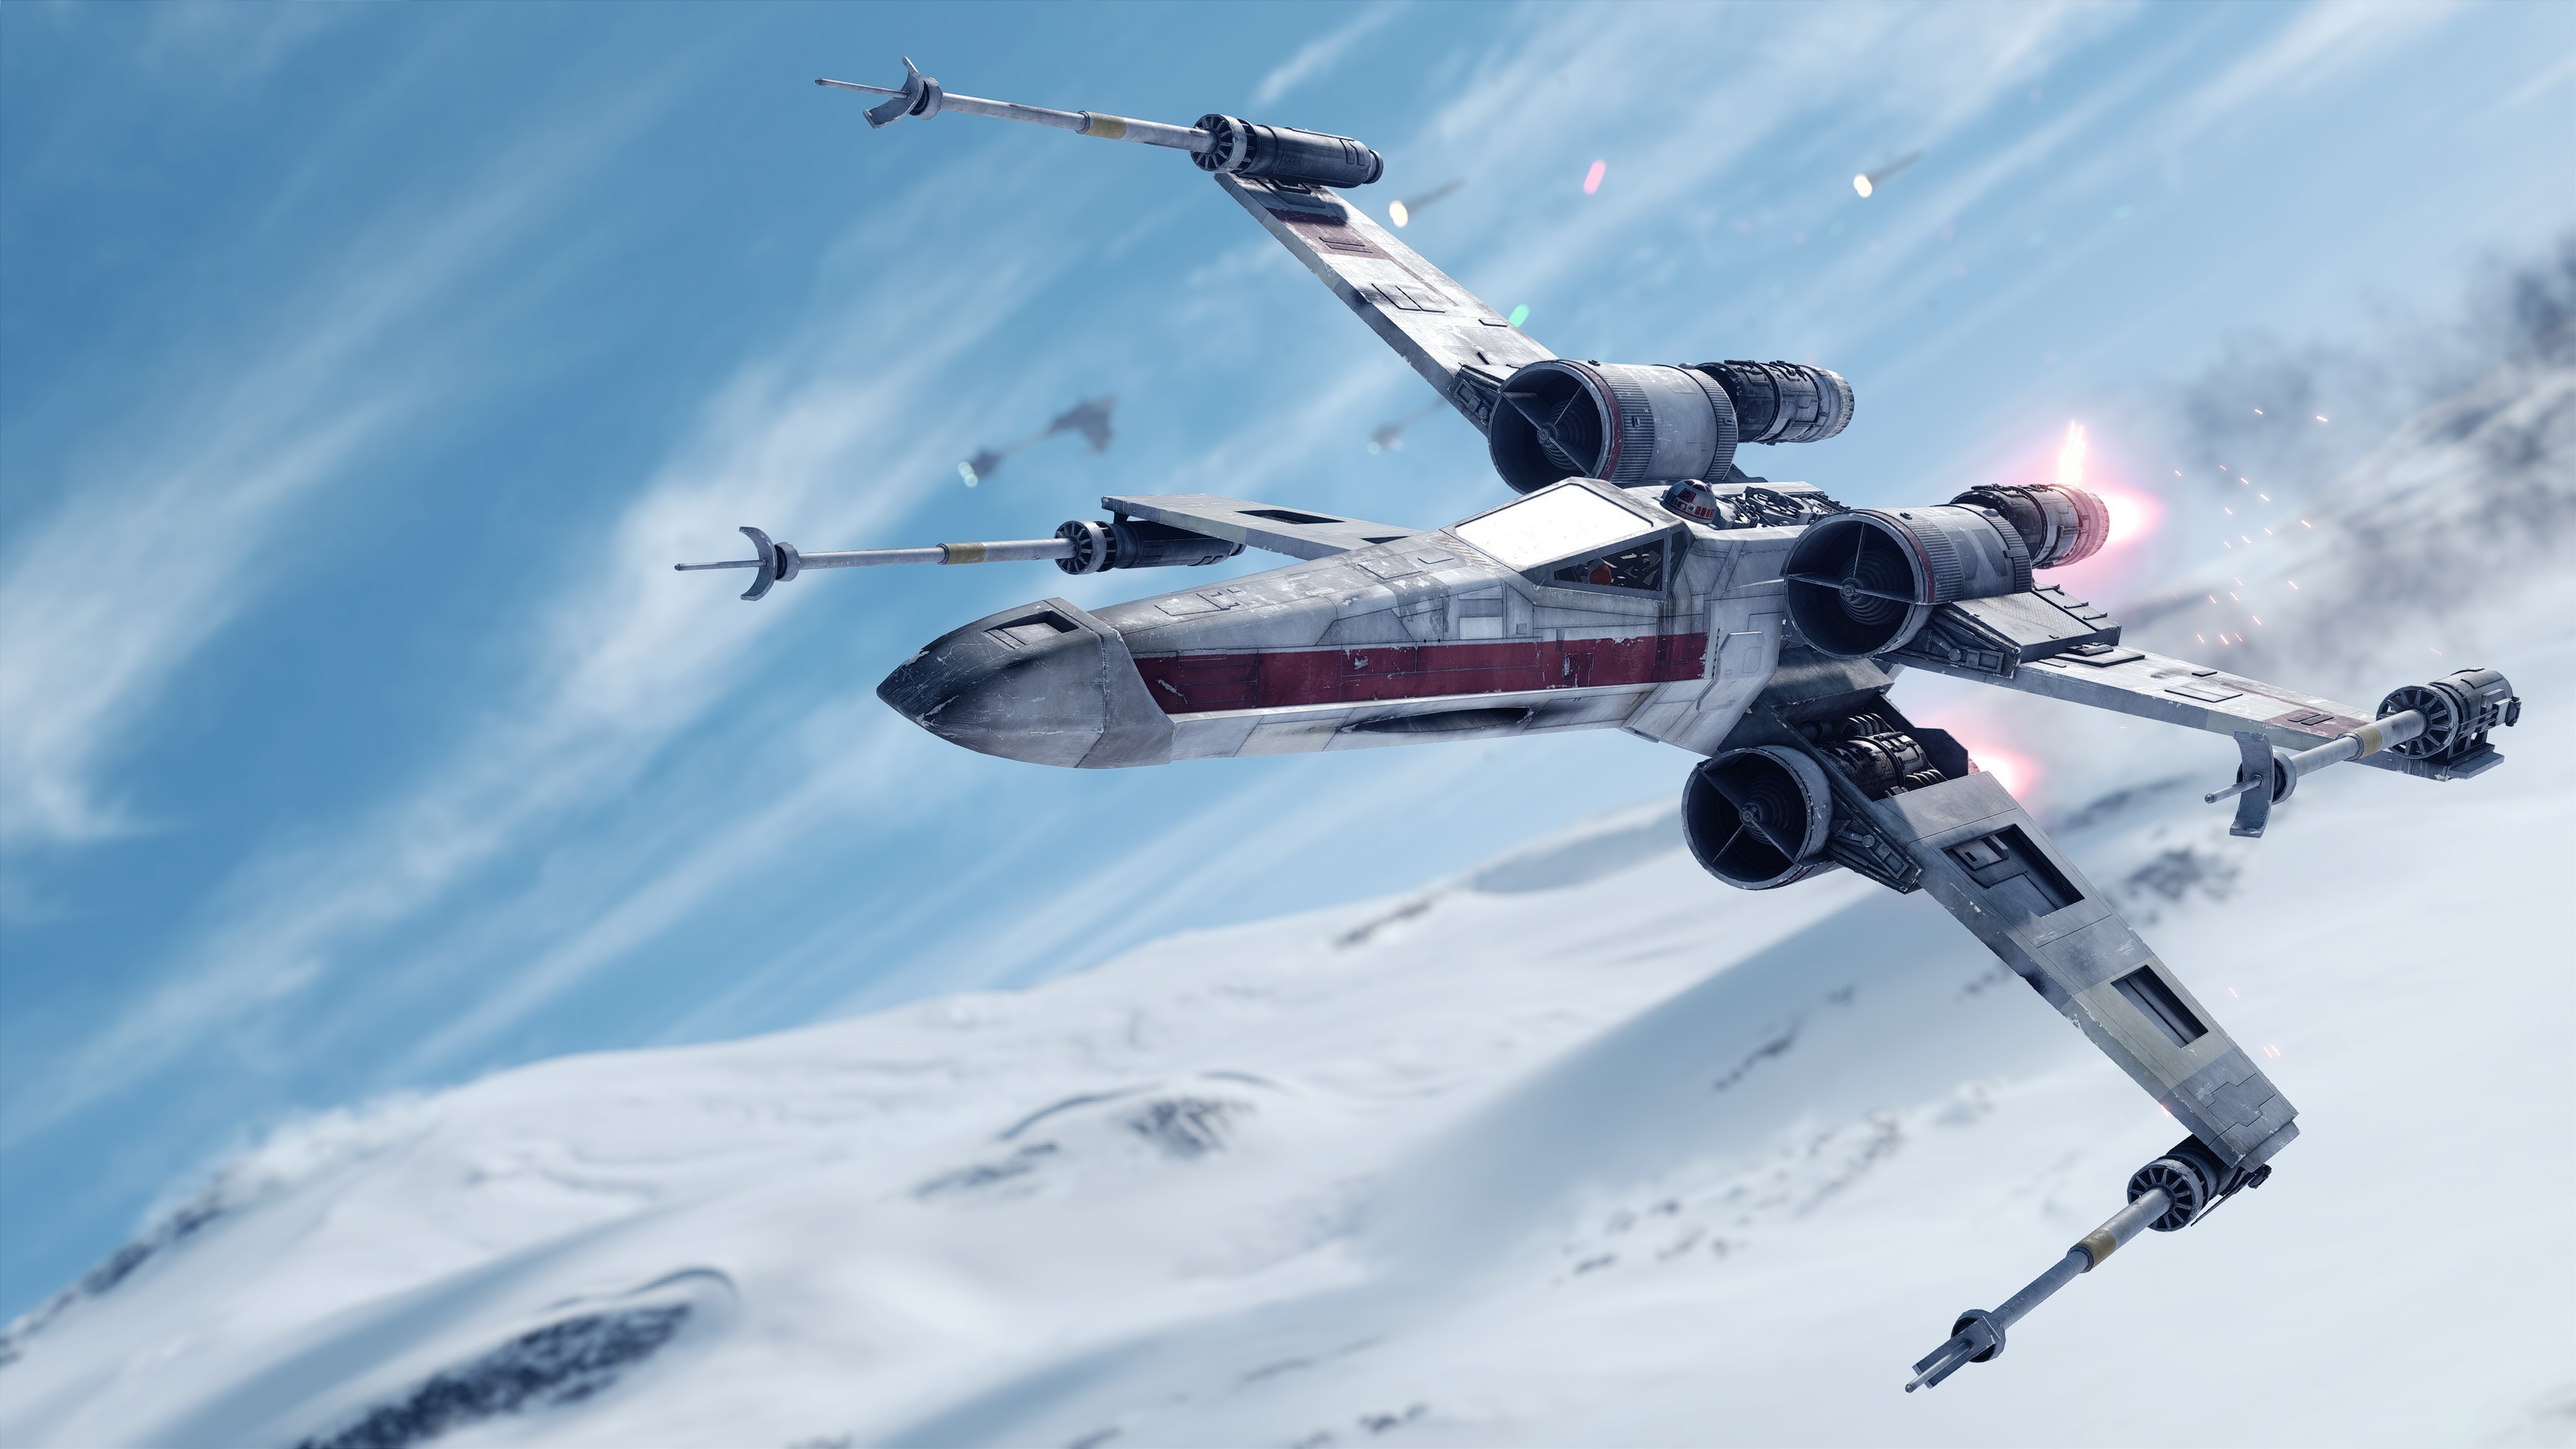 star wars battlefront (2015), video game, star wars